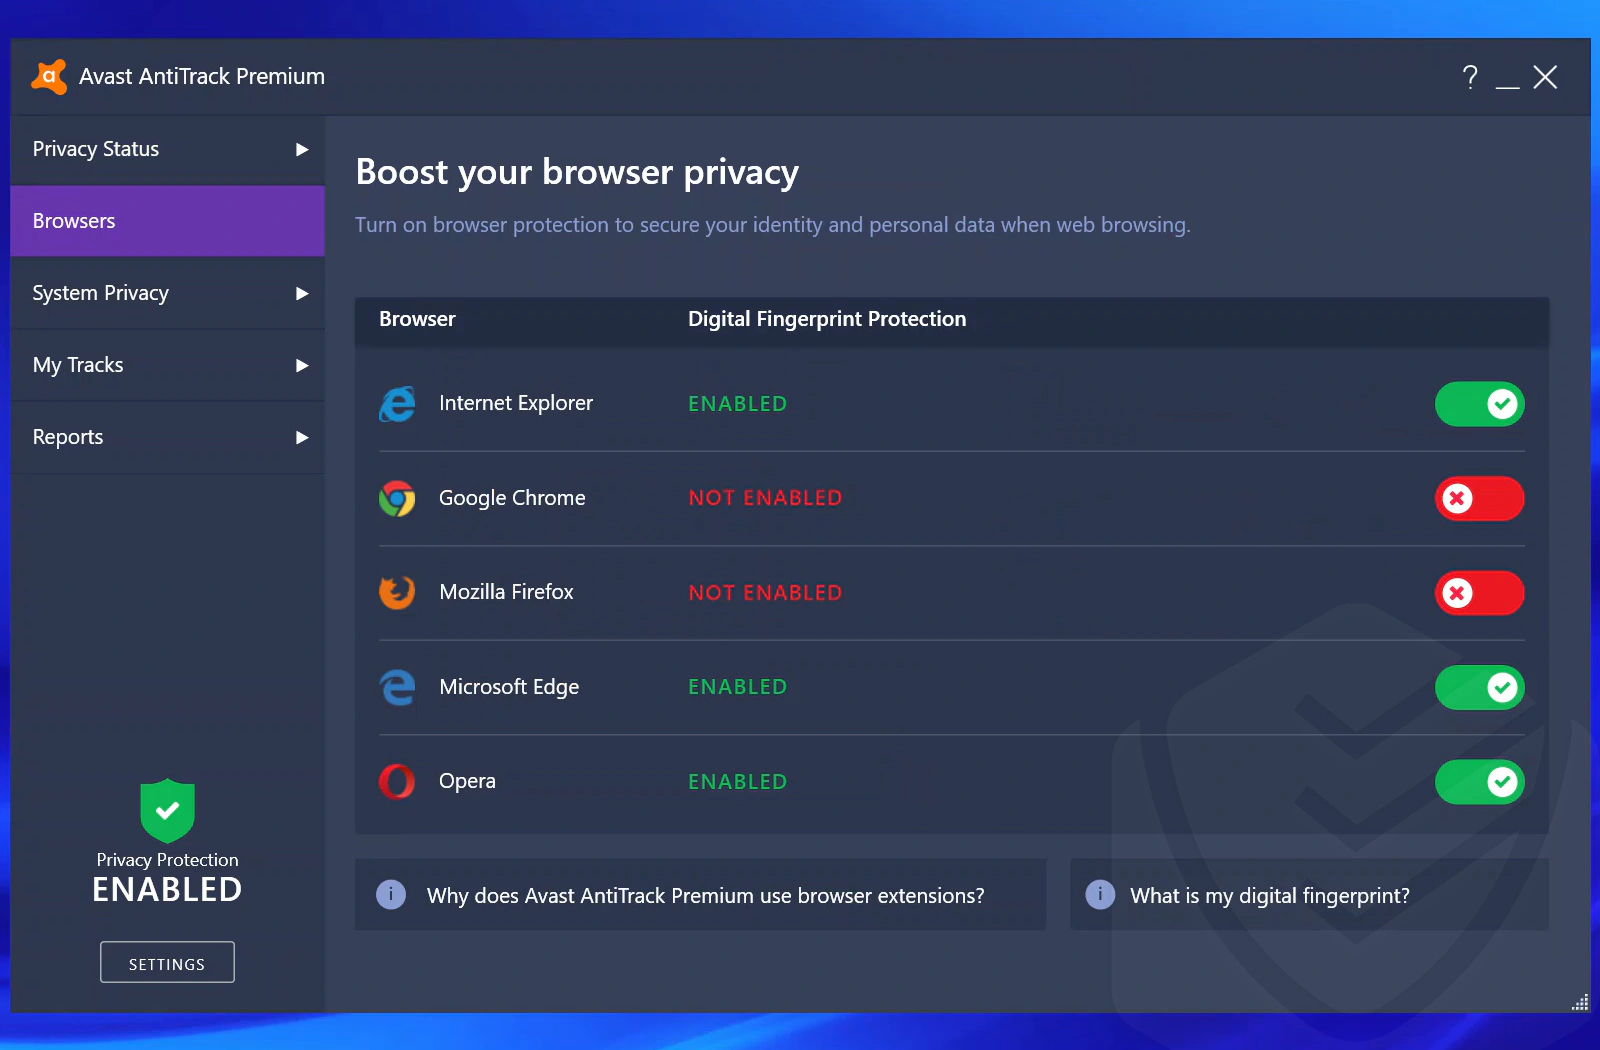 
Zwiększanie prywatności przeglądarki dzięki pakietowi Avast